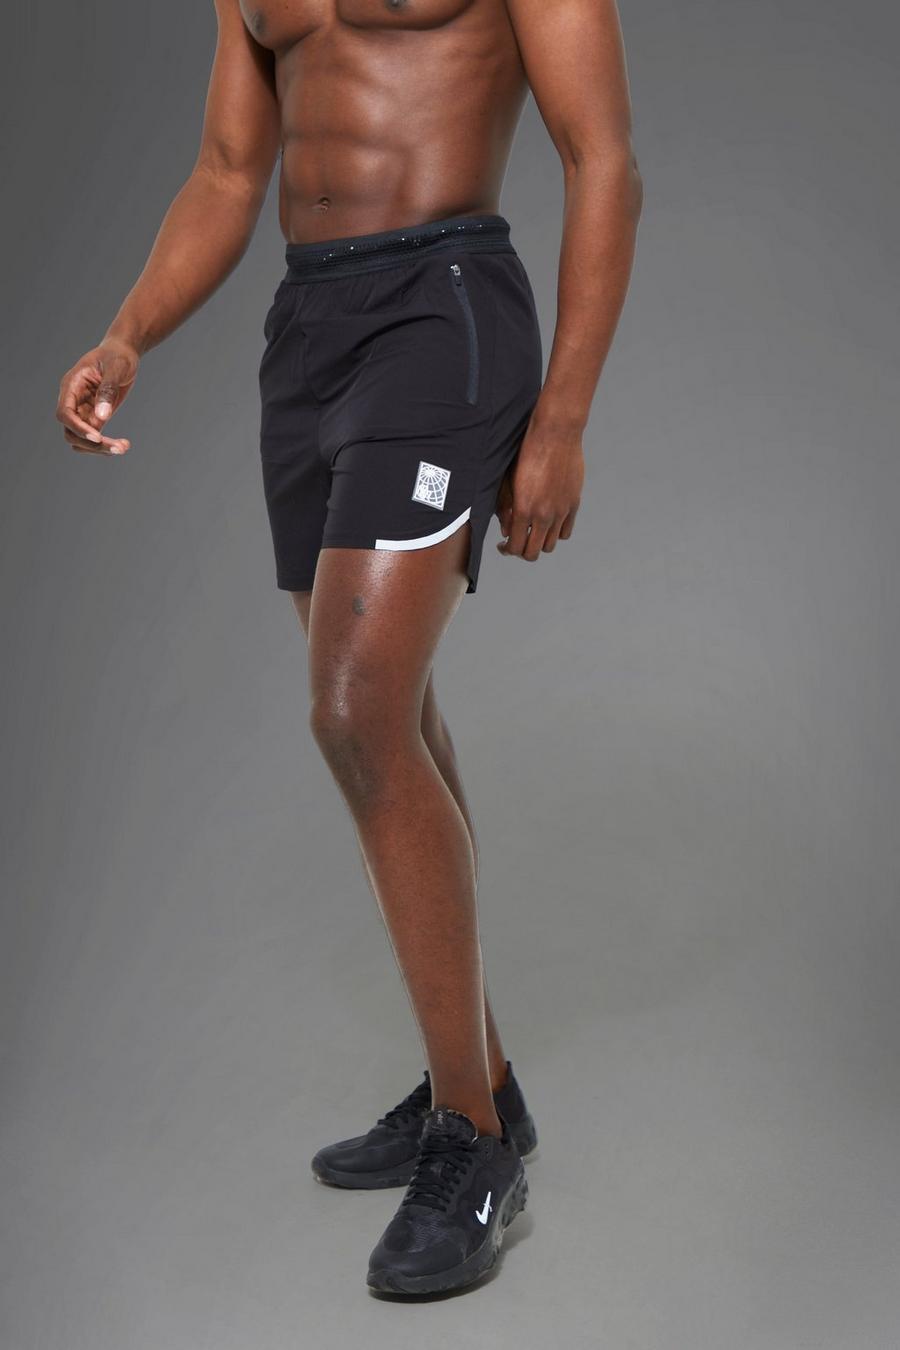 Pantalón corto MAN Active con detalle reflectante, Black negro